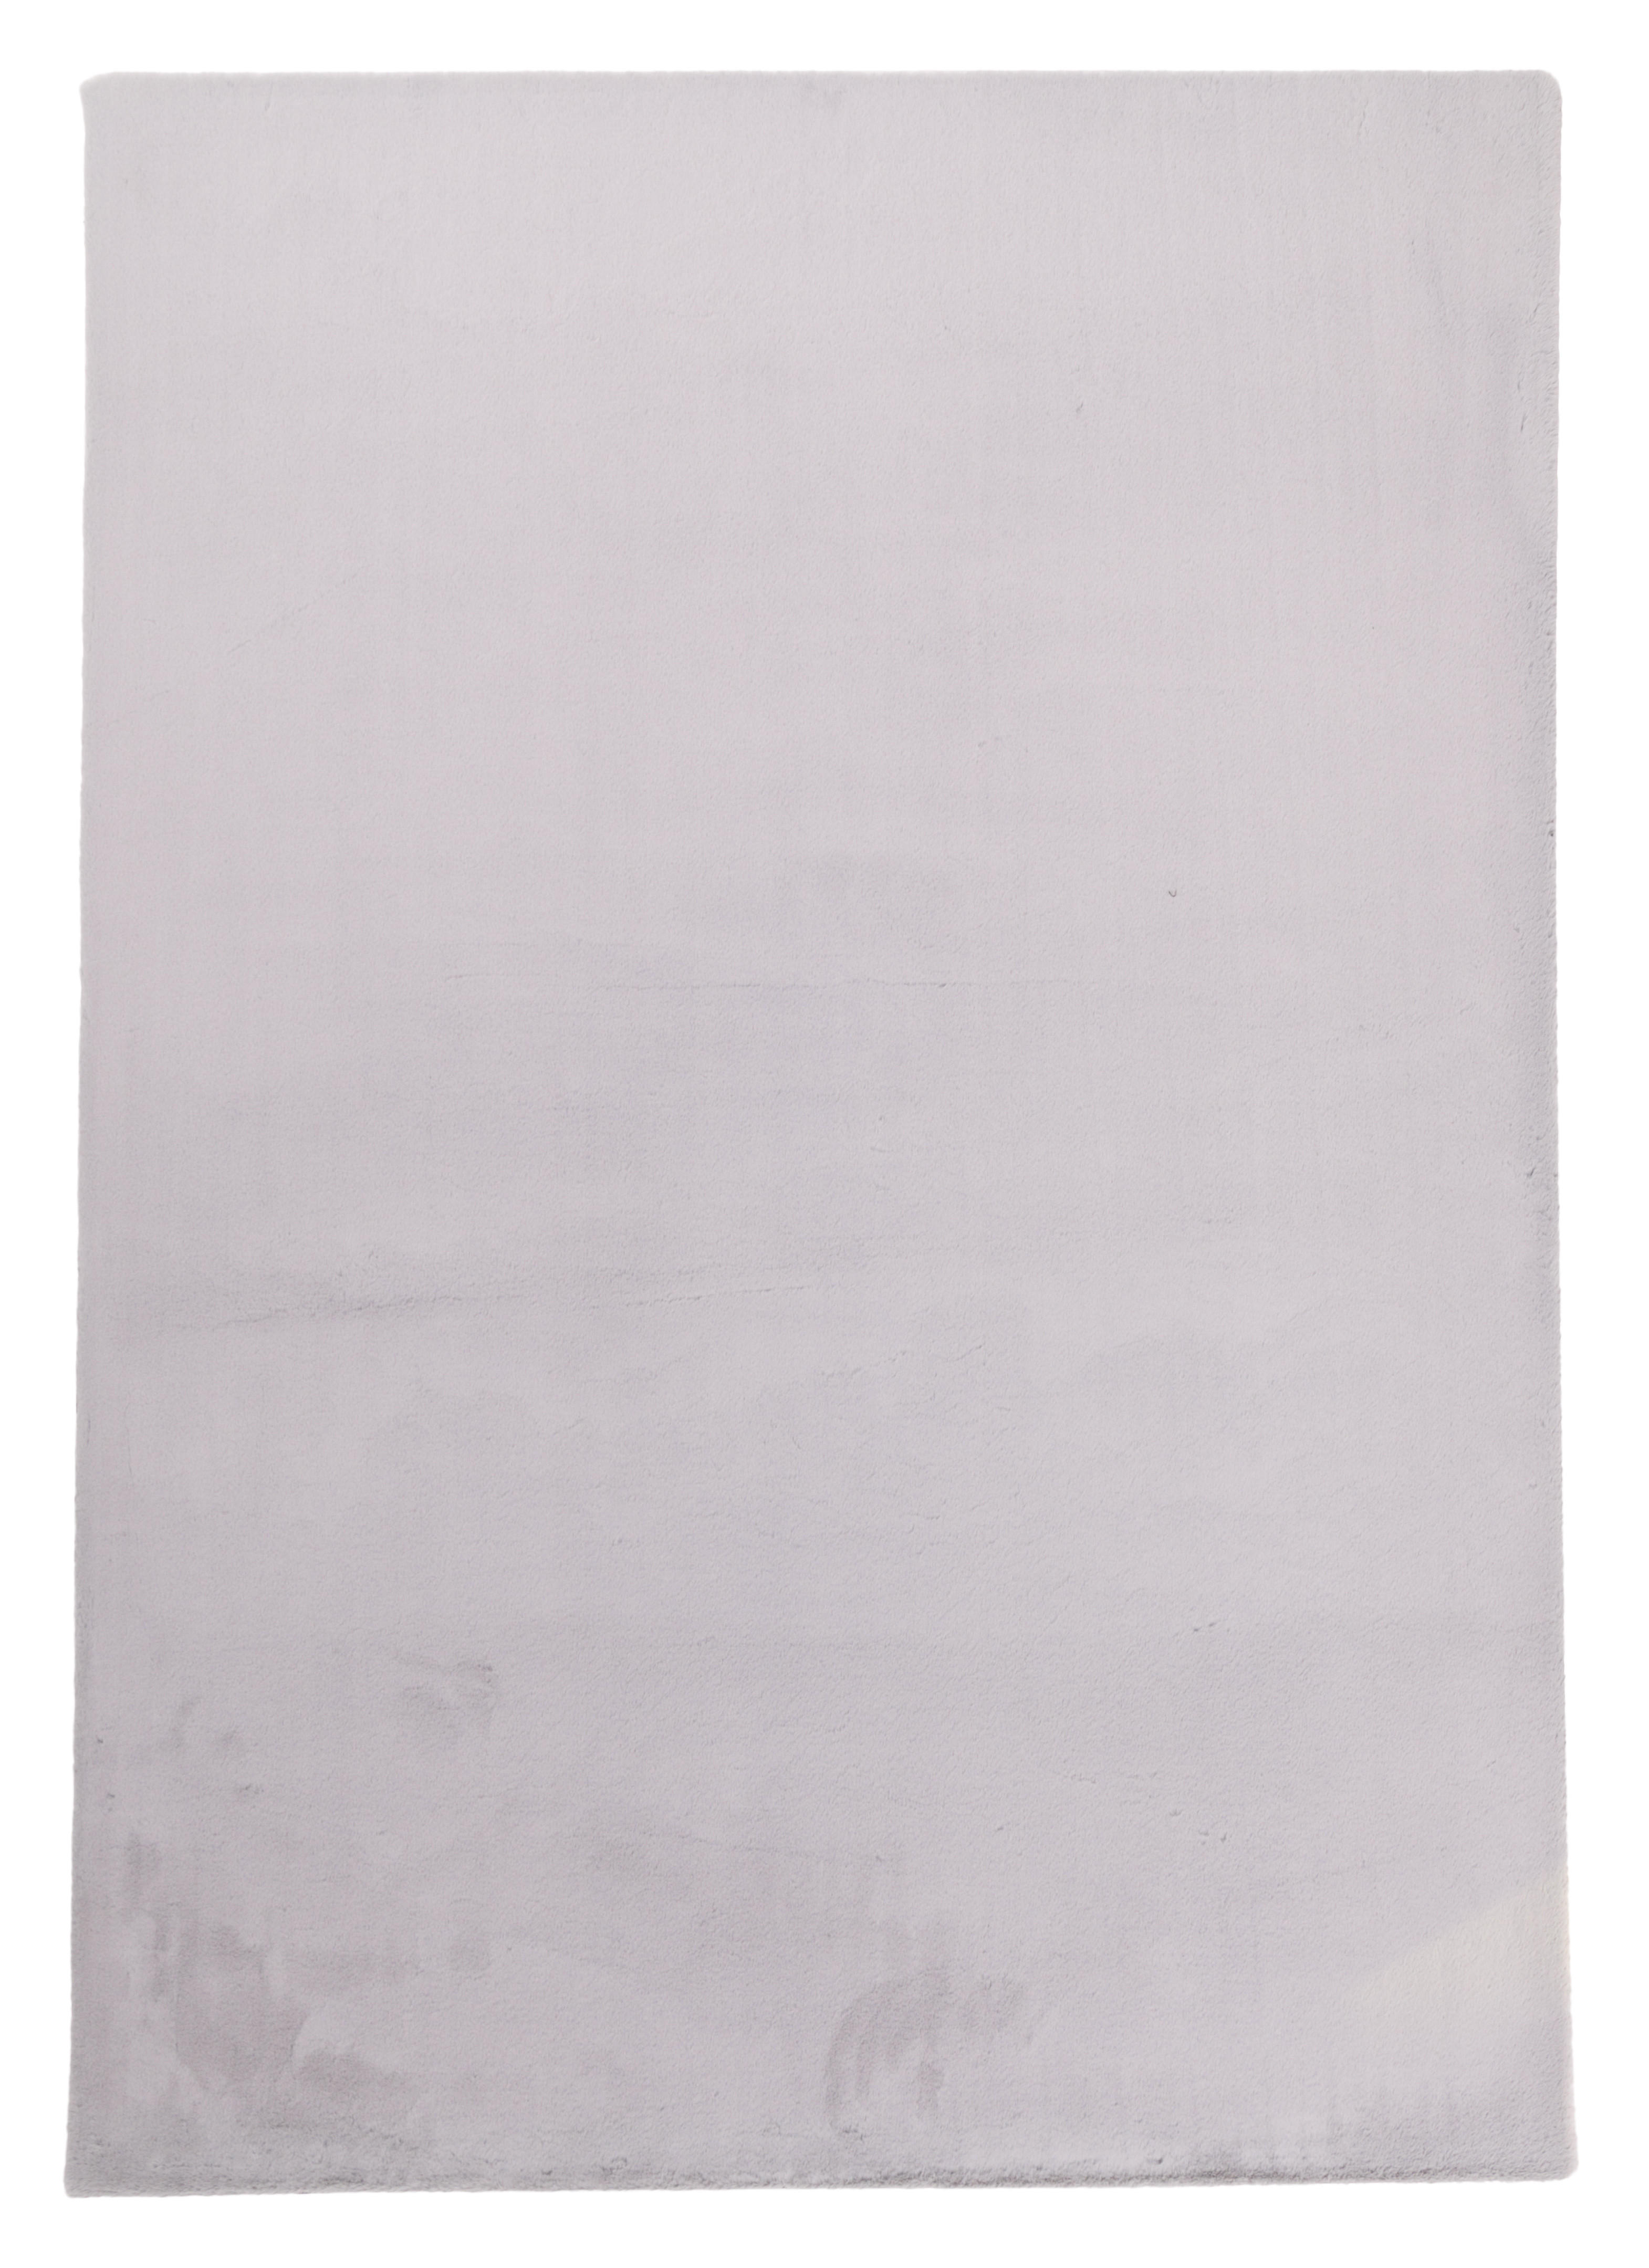 HOCHFLORTEPPICH 70/140 cm LIMA  - Silberfarben, Design, Textil (70/140cm) - Novel